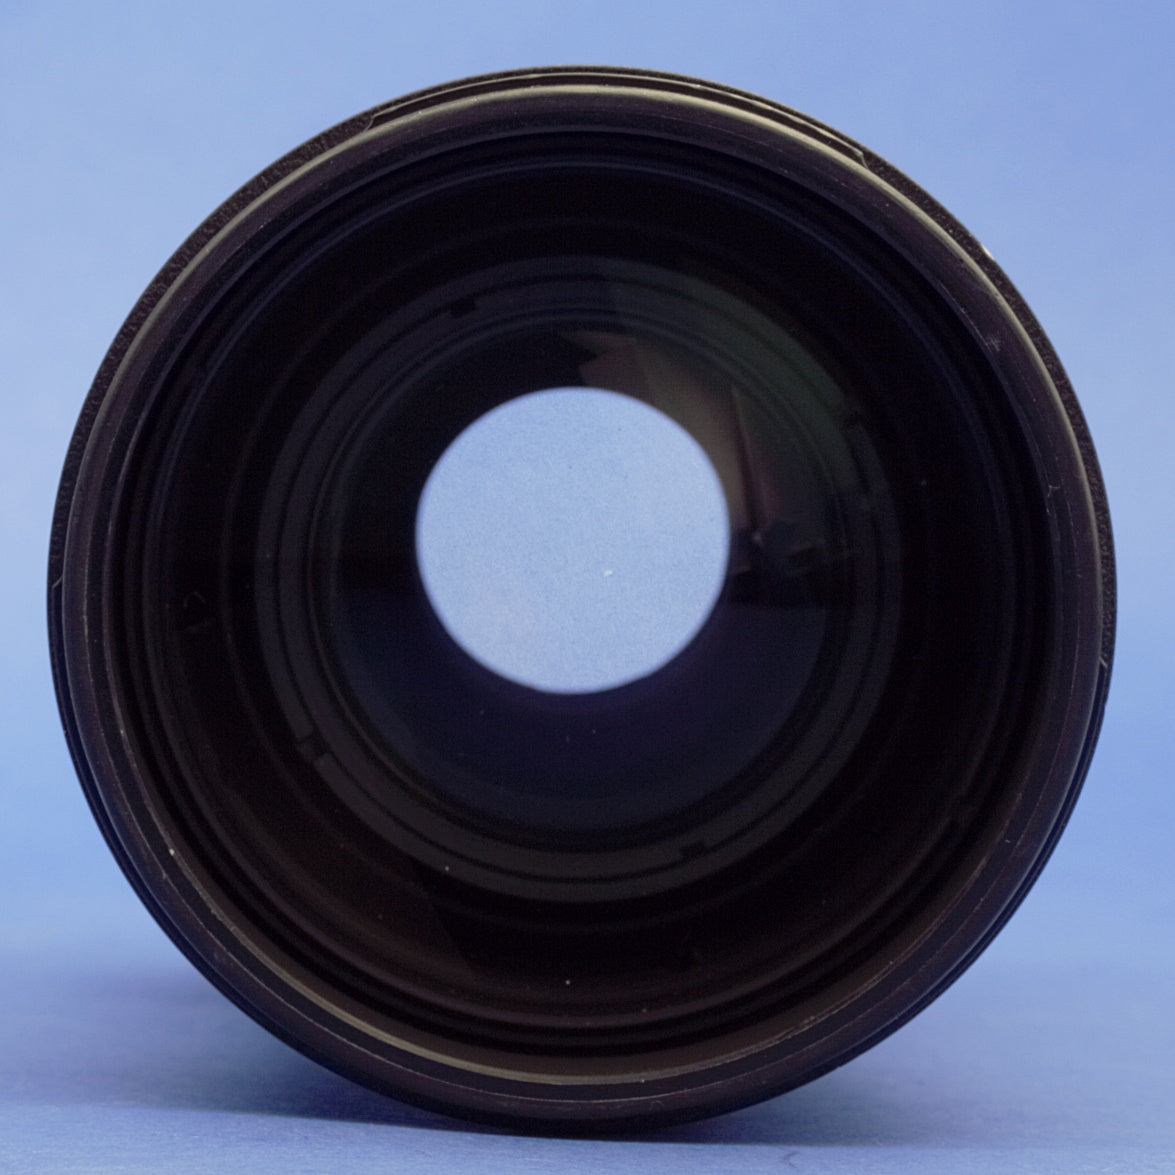 Nikon AF Nikkor 80-200mm 2.8 D Lens Two-Ring Version US Model